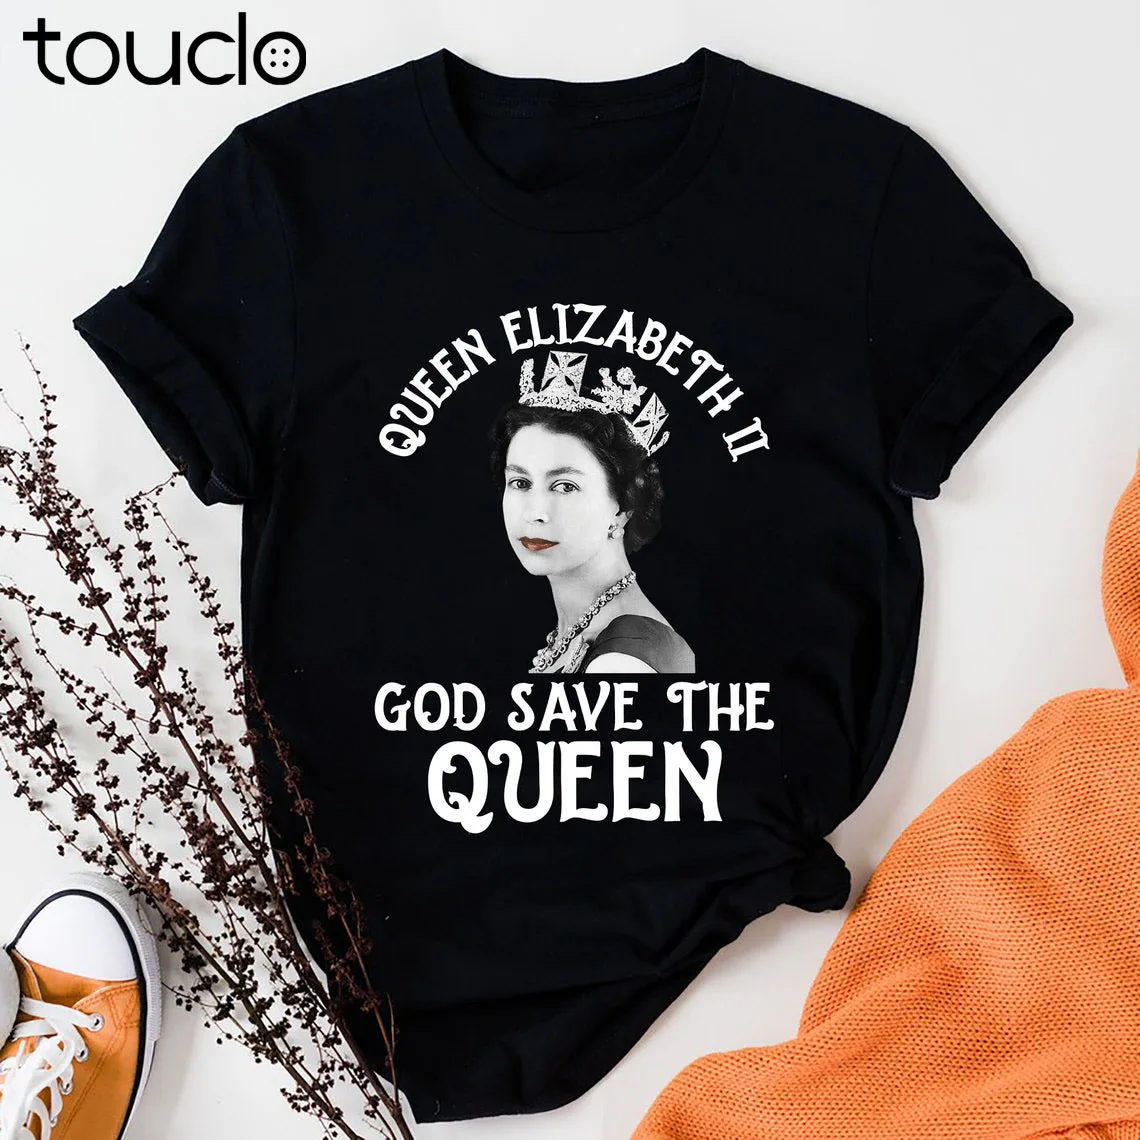 

Elizabeth Ii Queen God Save The Queen Shirt Rip Elizabeth Queen 1926-2022 Shirt Rip Queen Shirt Xs-5Xl Custom Gift